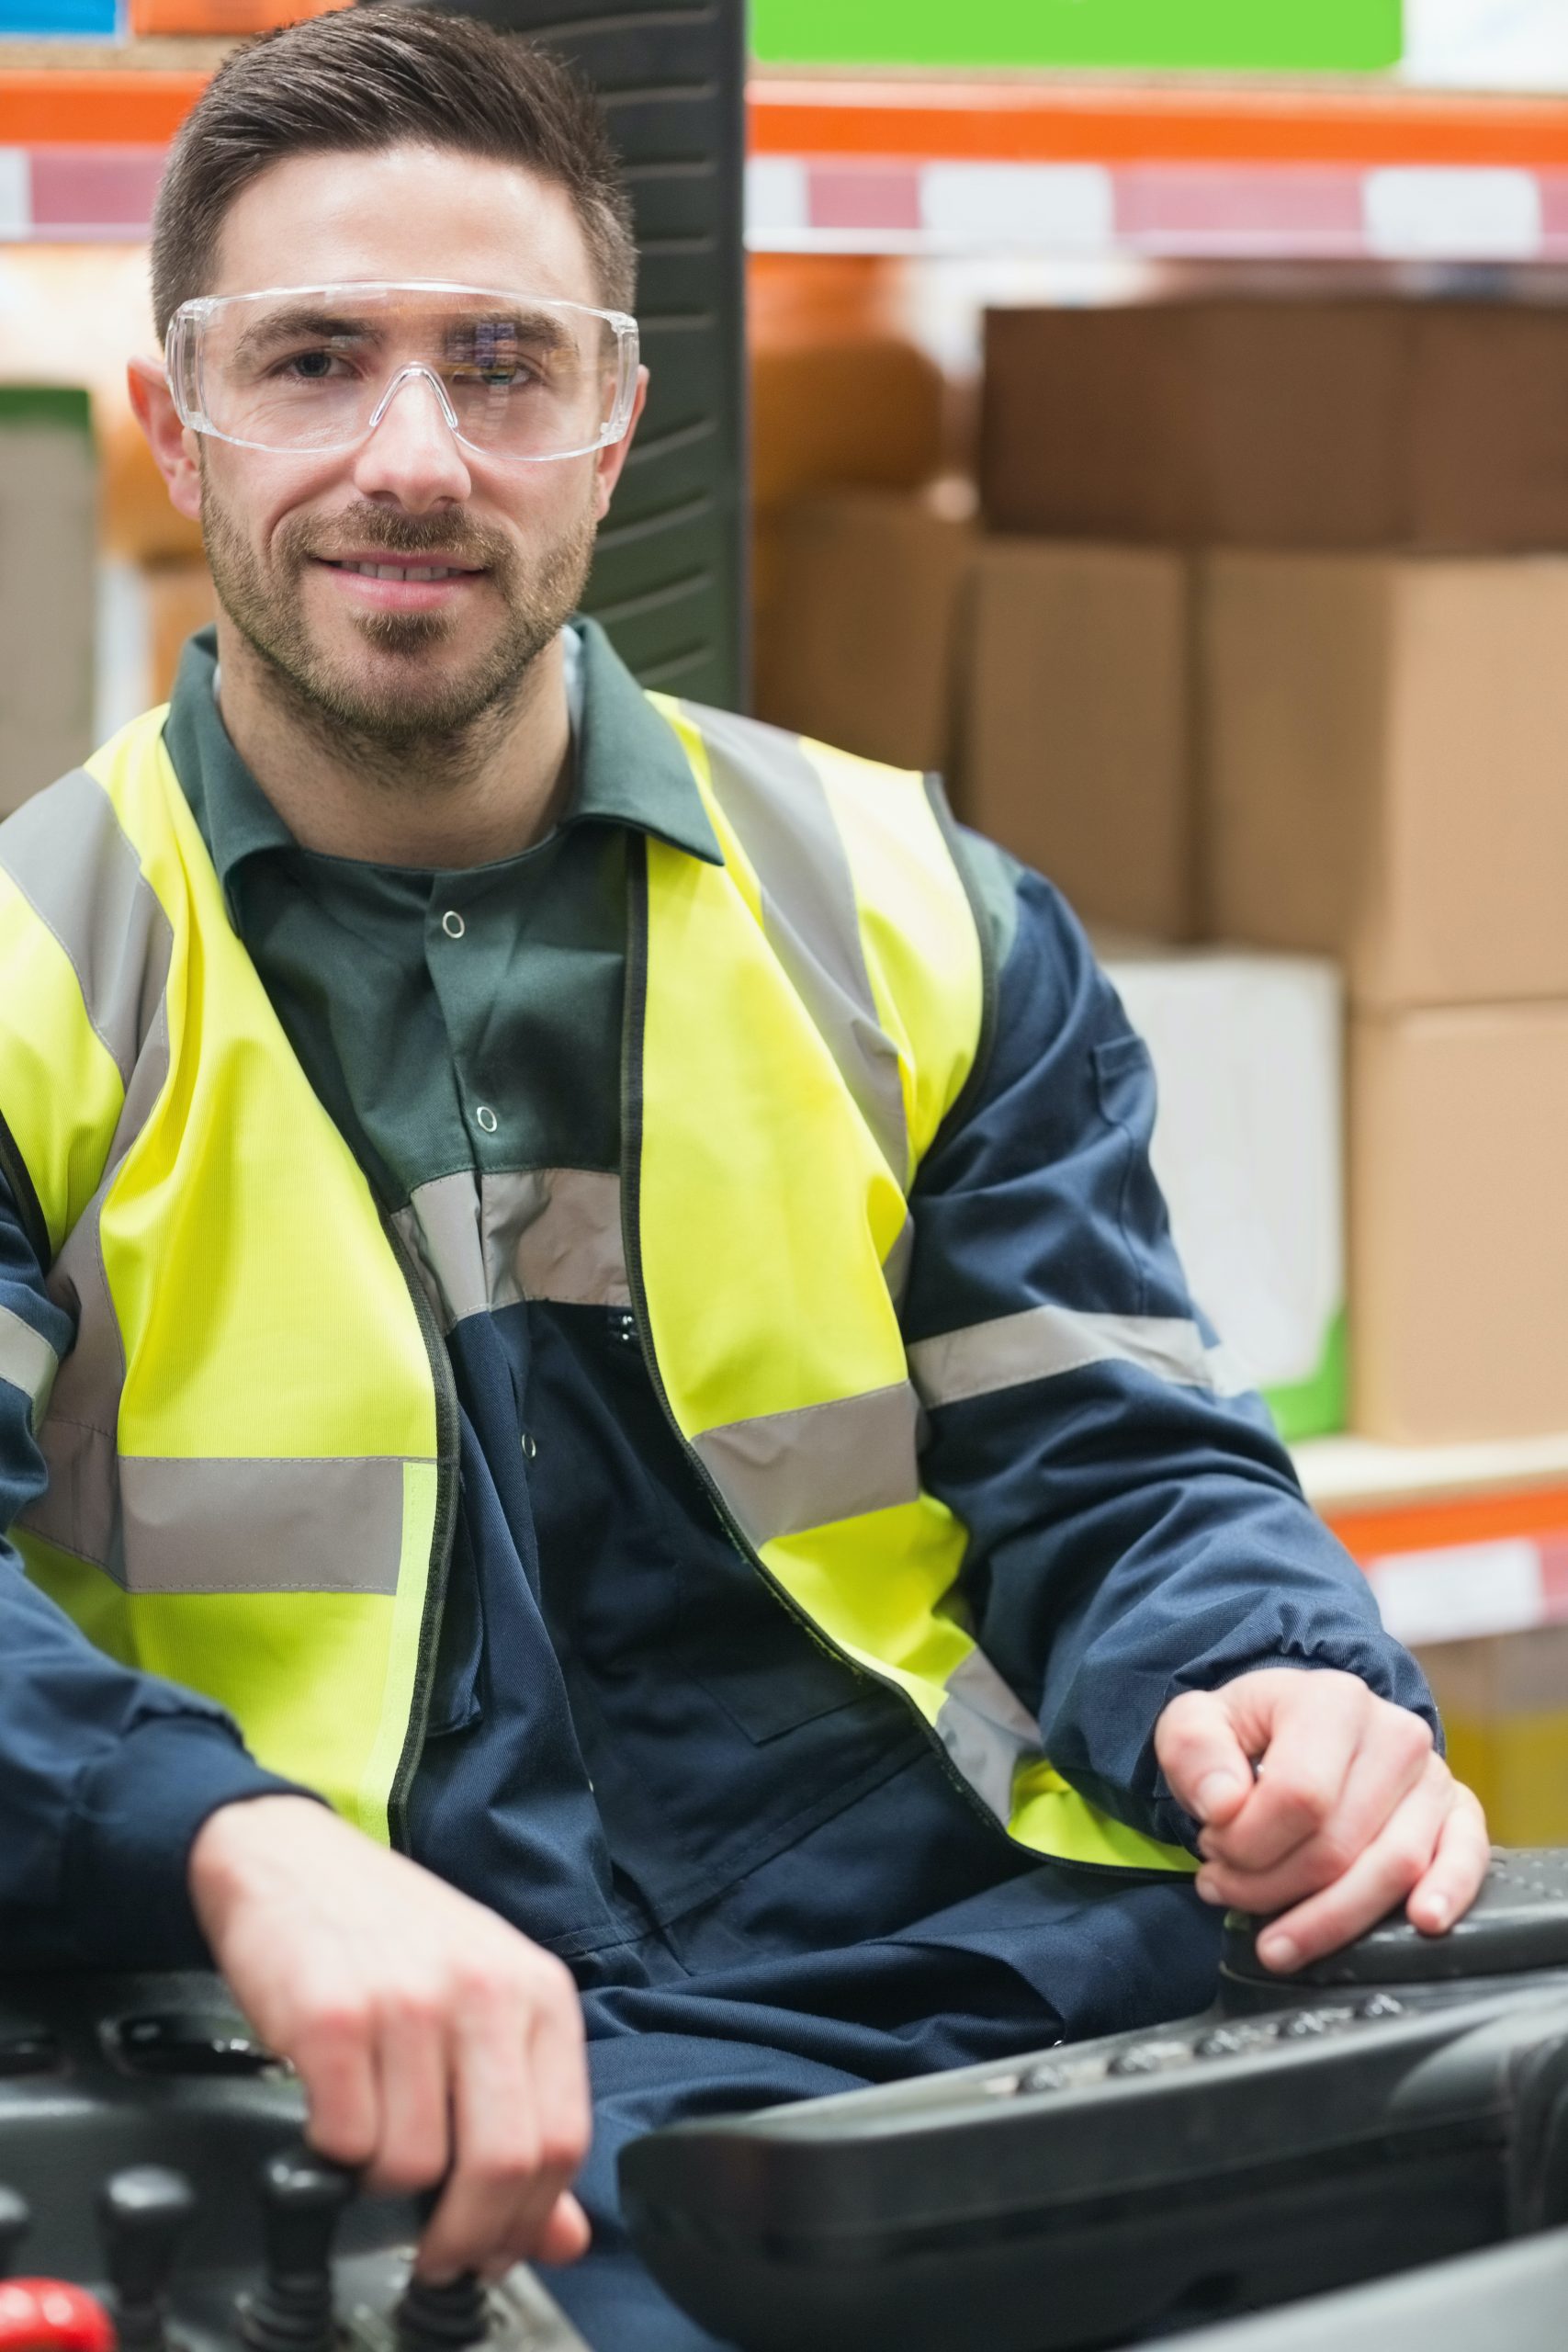 Bild eines lächelnden Arbeiters mit Schutzbrille und -weste auf einem Gabelstabler.